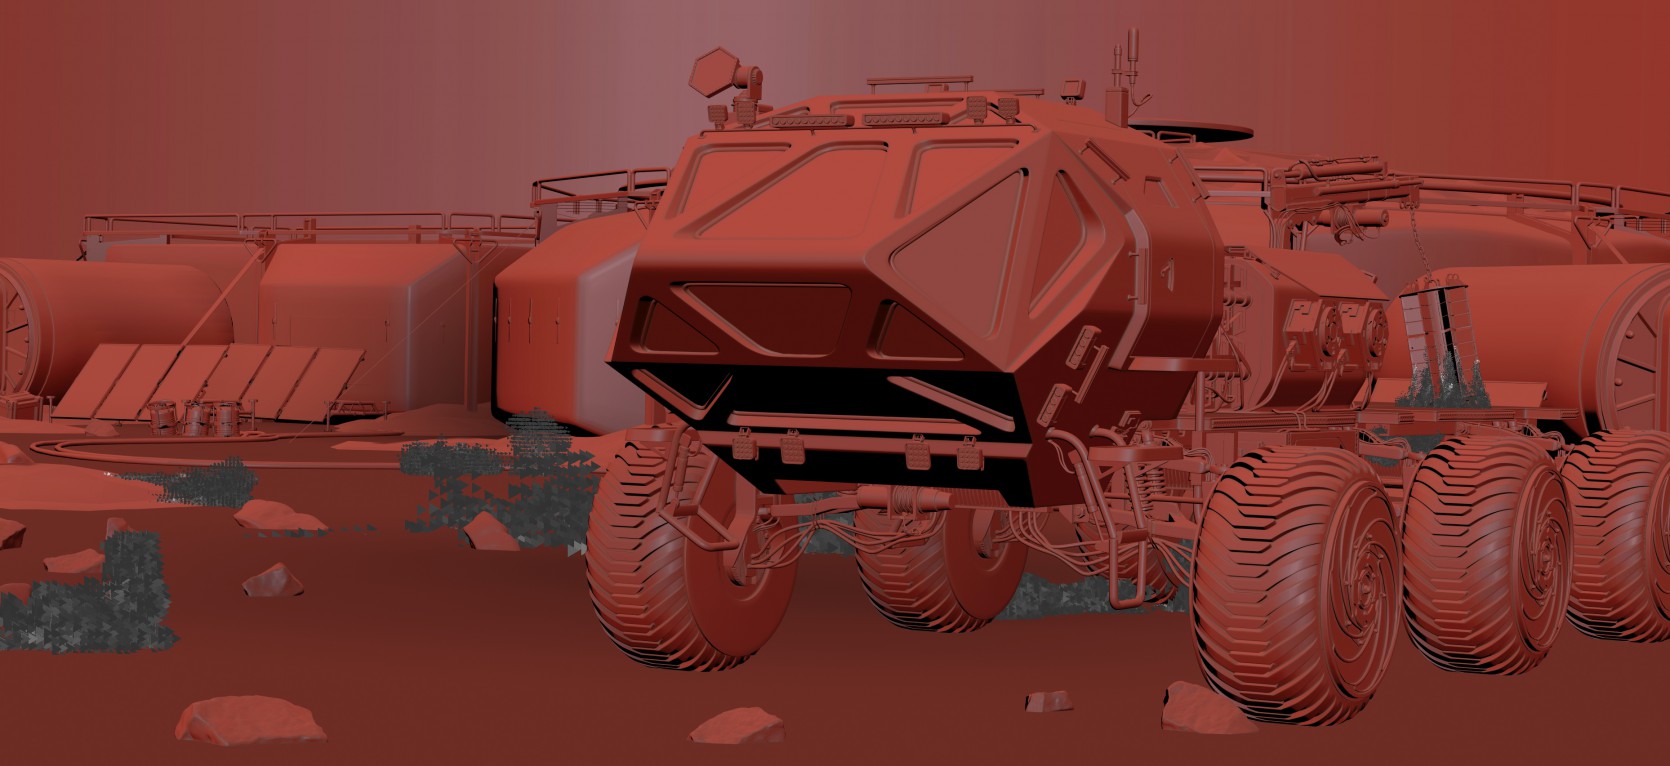 The Martian Rover 3.